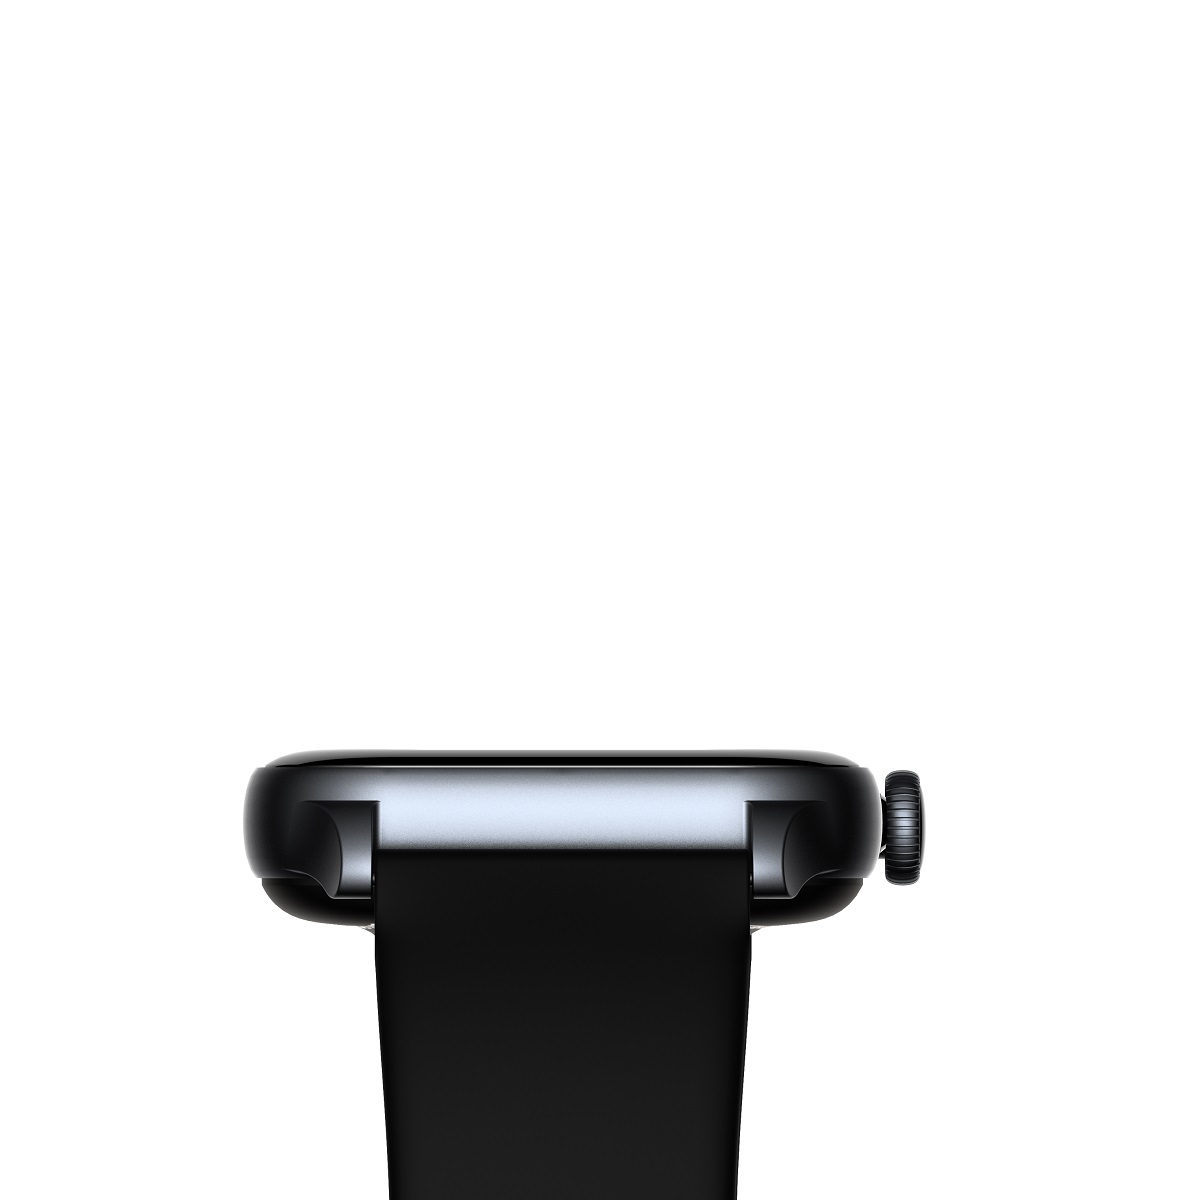 Inteligentny zegarek sportowy wodoodporny smartwatch z kwadratow kopert damski / mski Riversong Motive 9 szary SW900 / 4